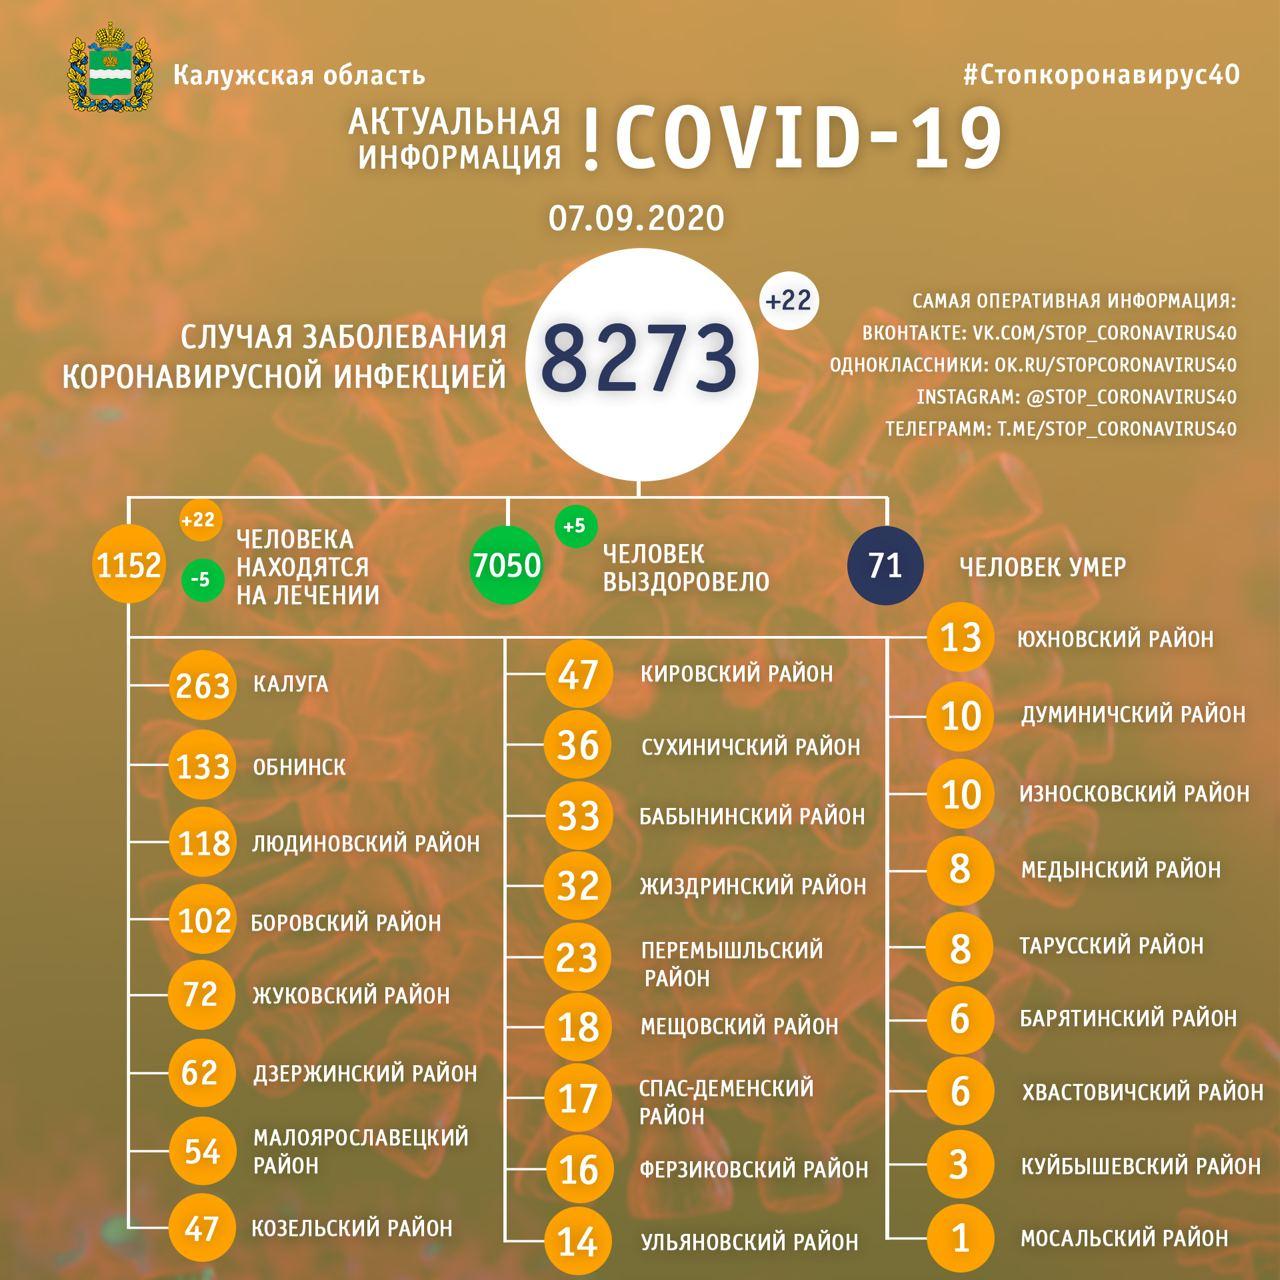 Официальная статистика по коронавирусу в Калужской области на 7 сентября 2020 года.